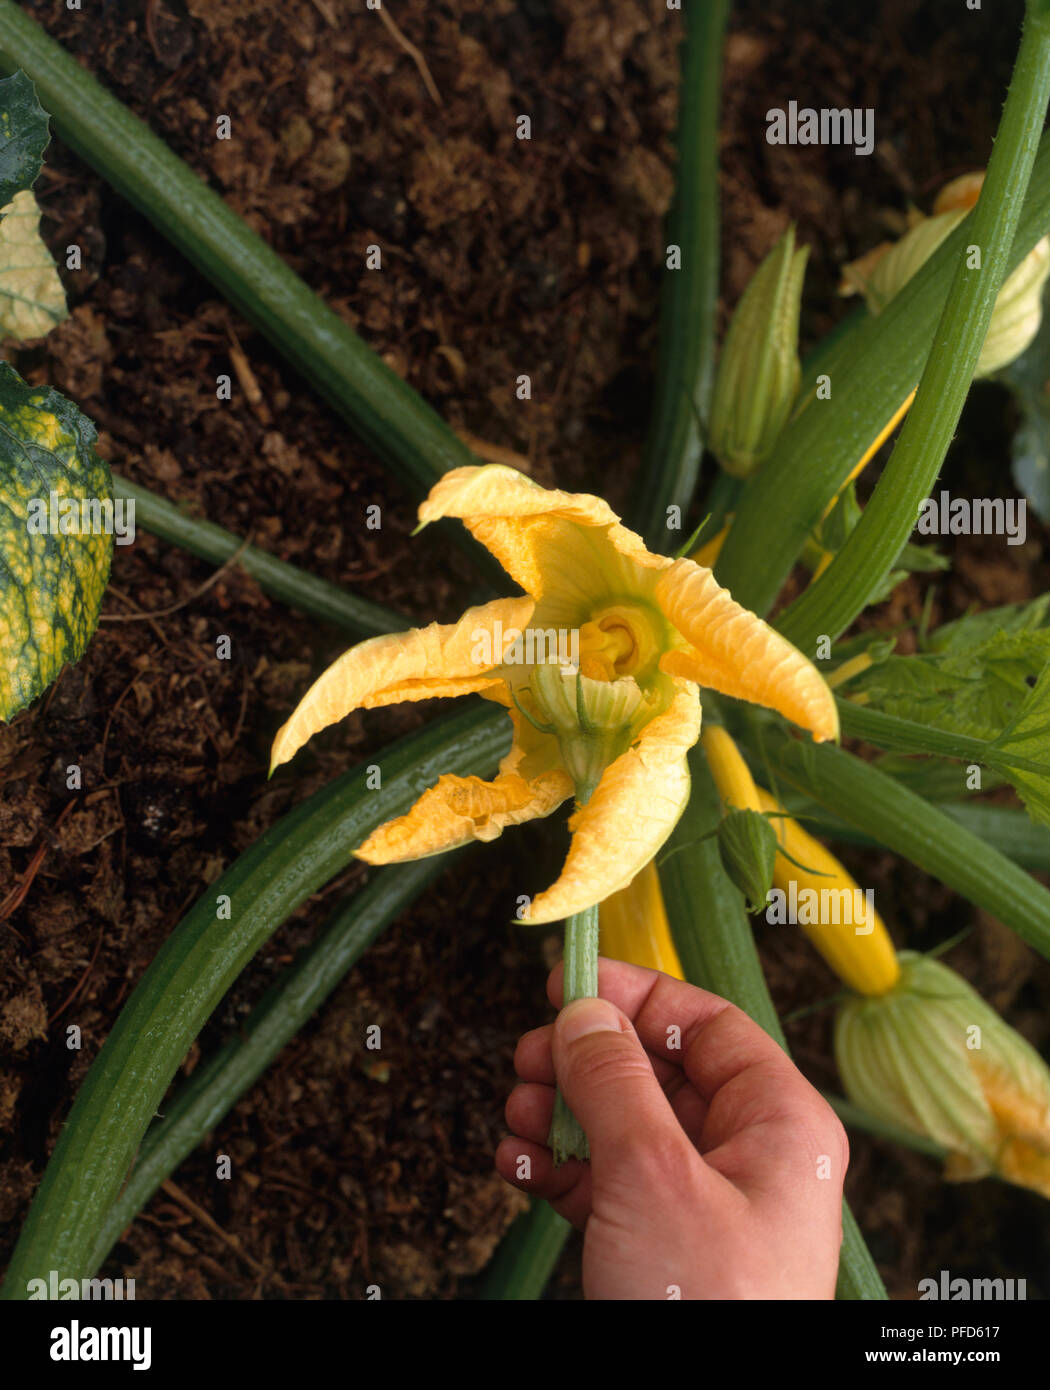 Mano-impollinazione di zucca gialla impianto premendo il fiore maschio sul fiore femmina Foto Stock